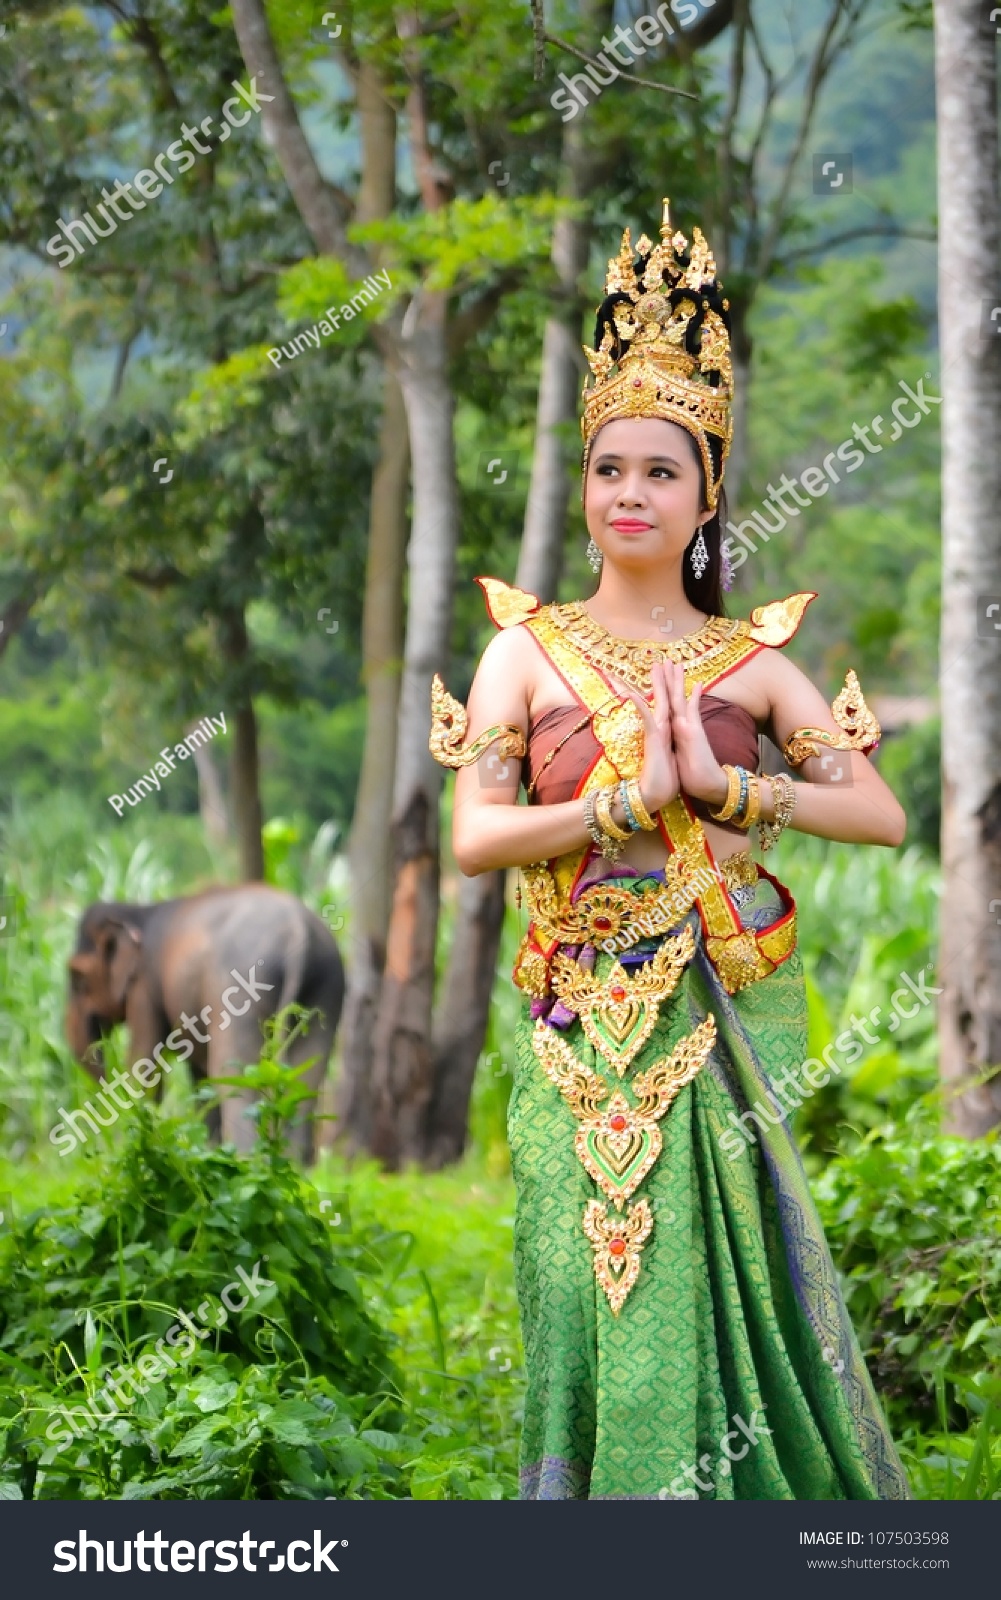 Lifestyle Among Southeast Asian Women 61